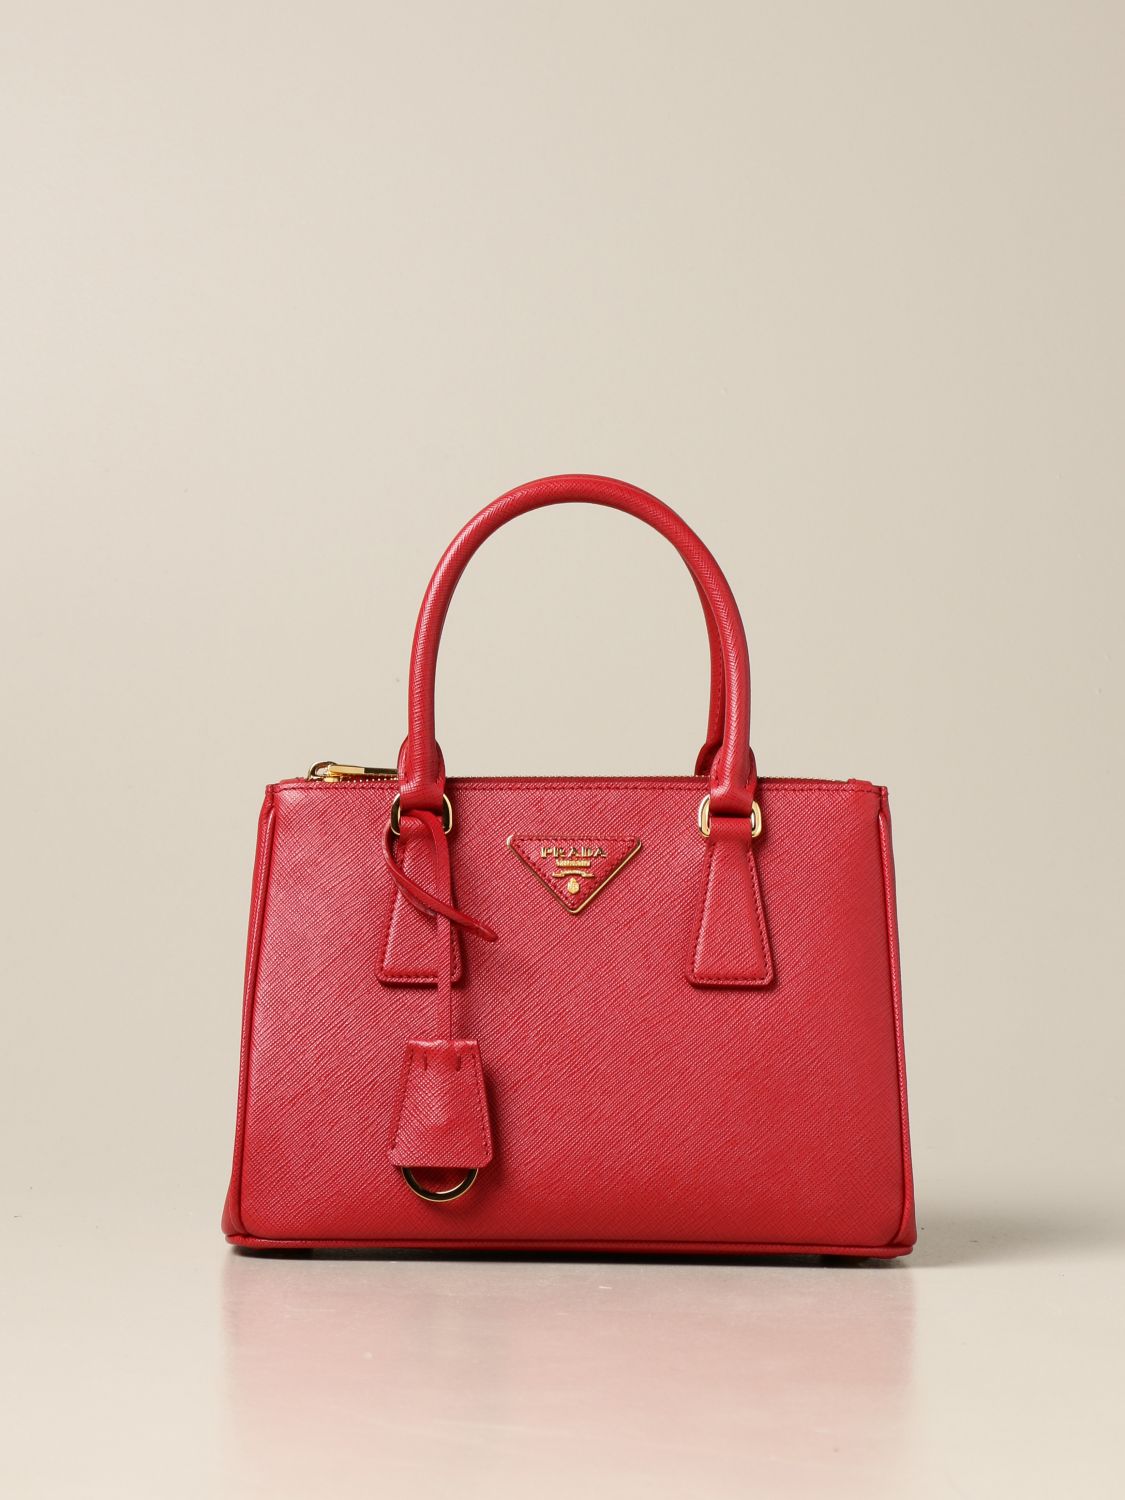 PRADA: Galleria bag in saffiano leather - Coral